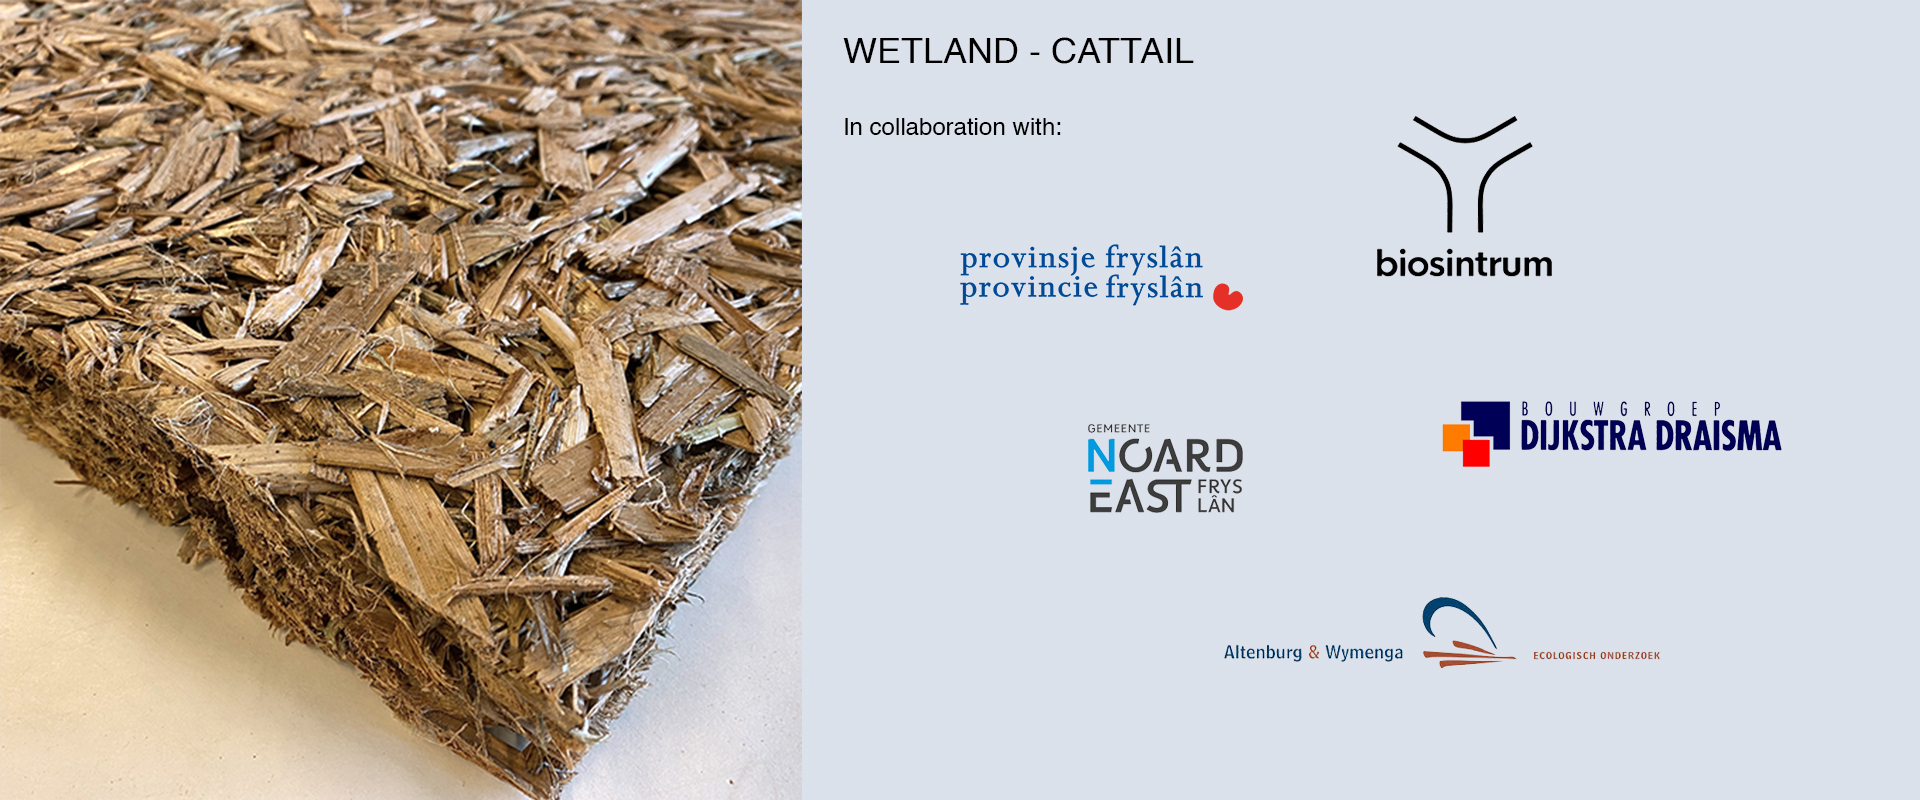 Wetland - cattail